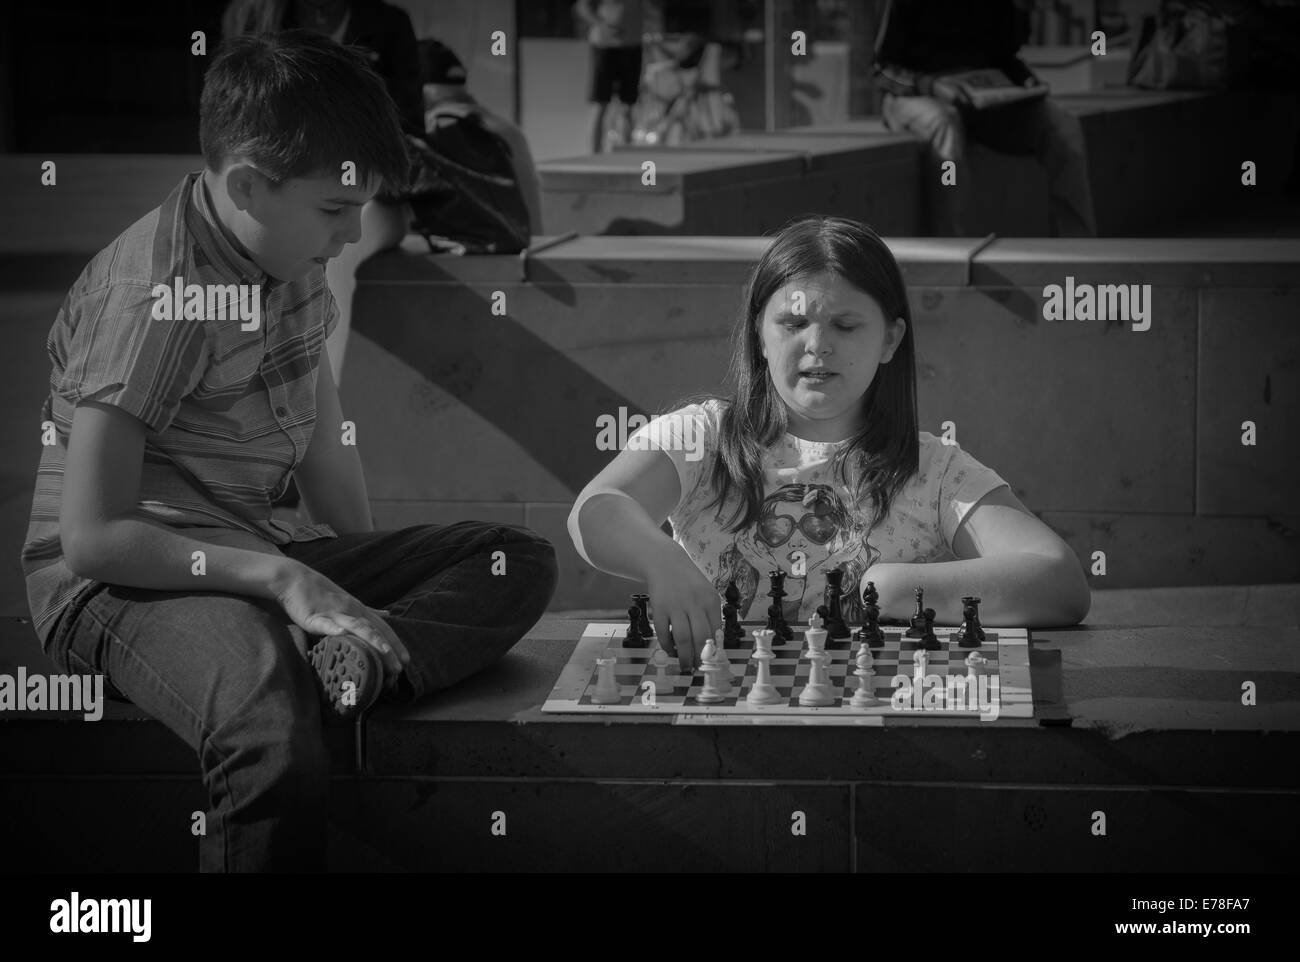 Les jeunes frère et Sœur jouant aux échecs Banque D'Images